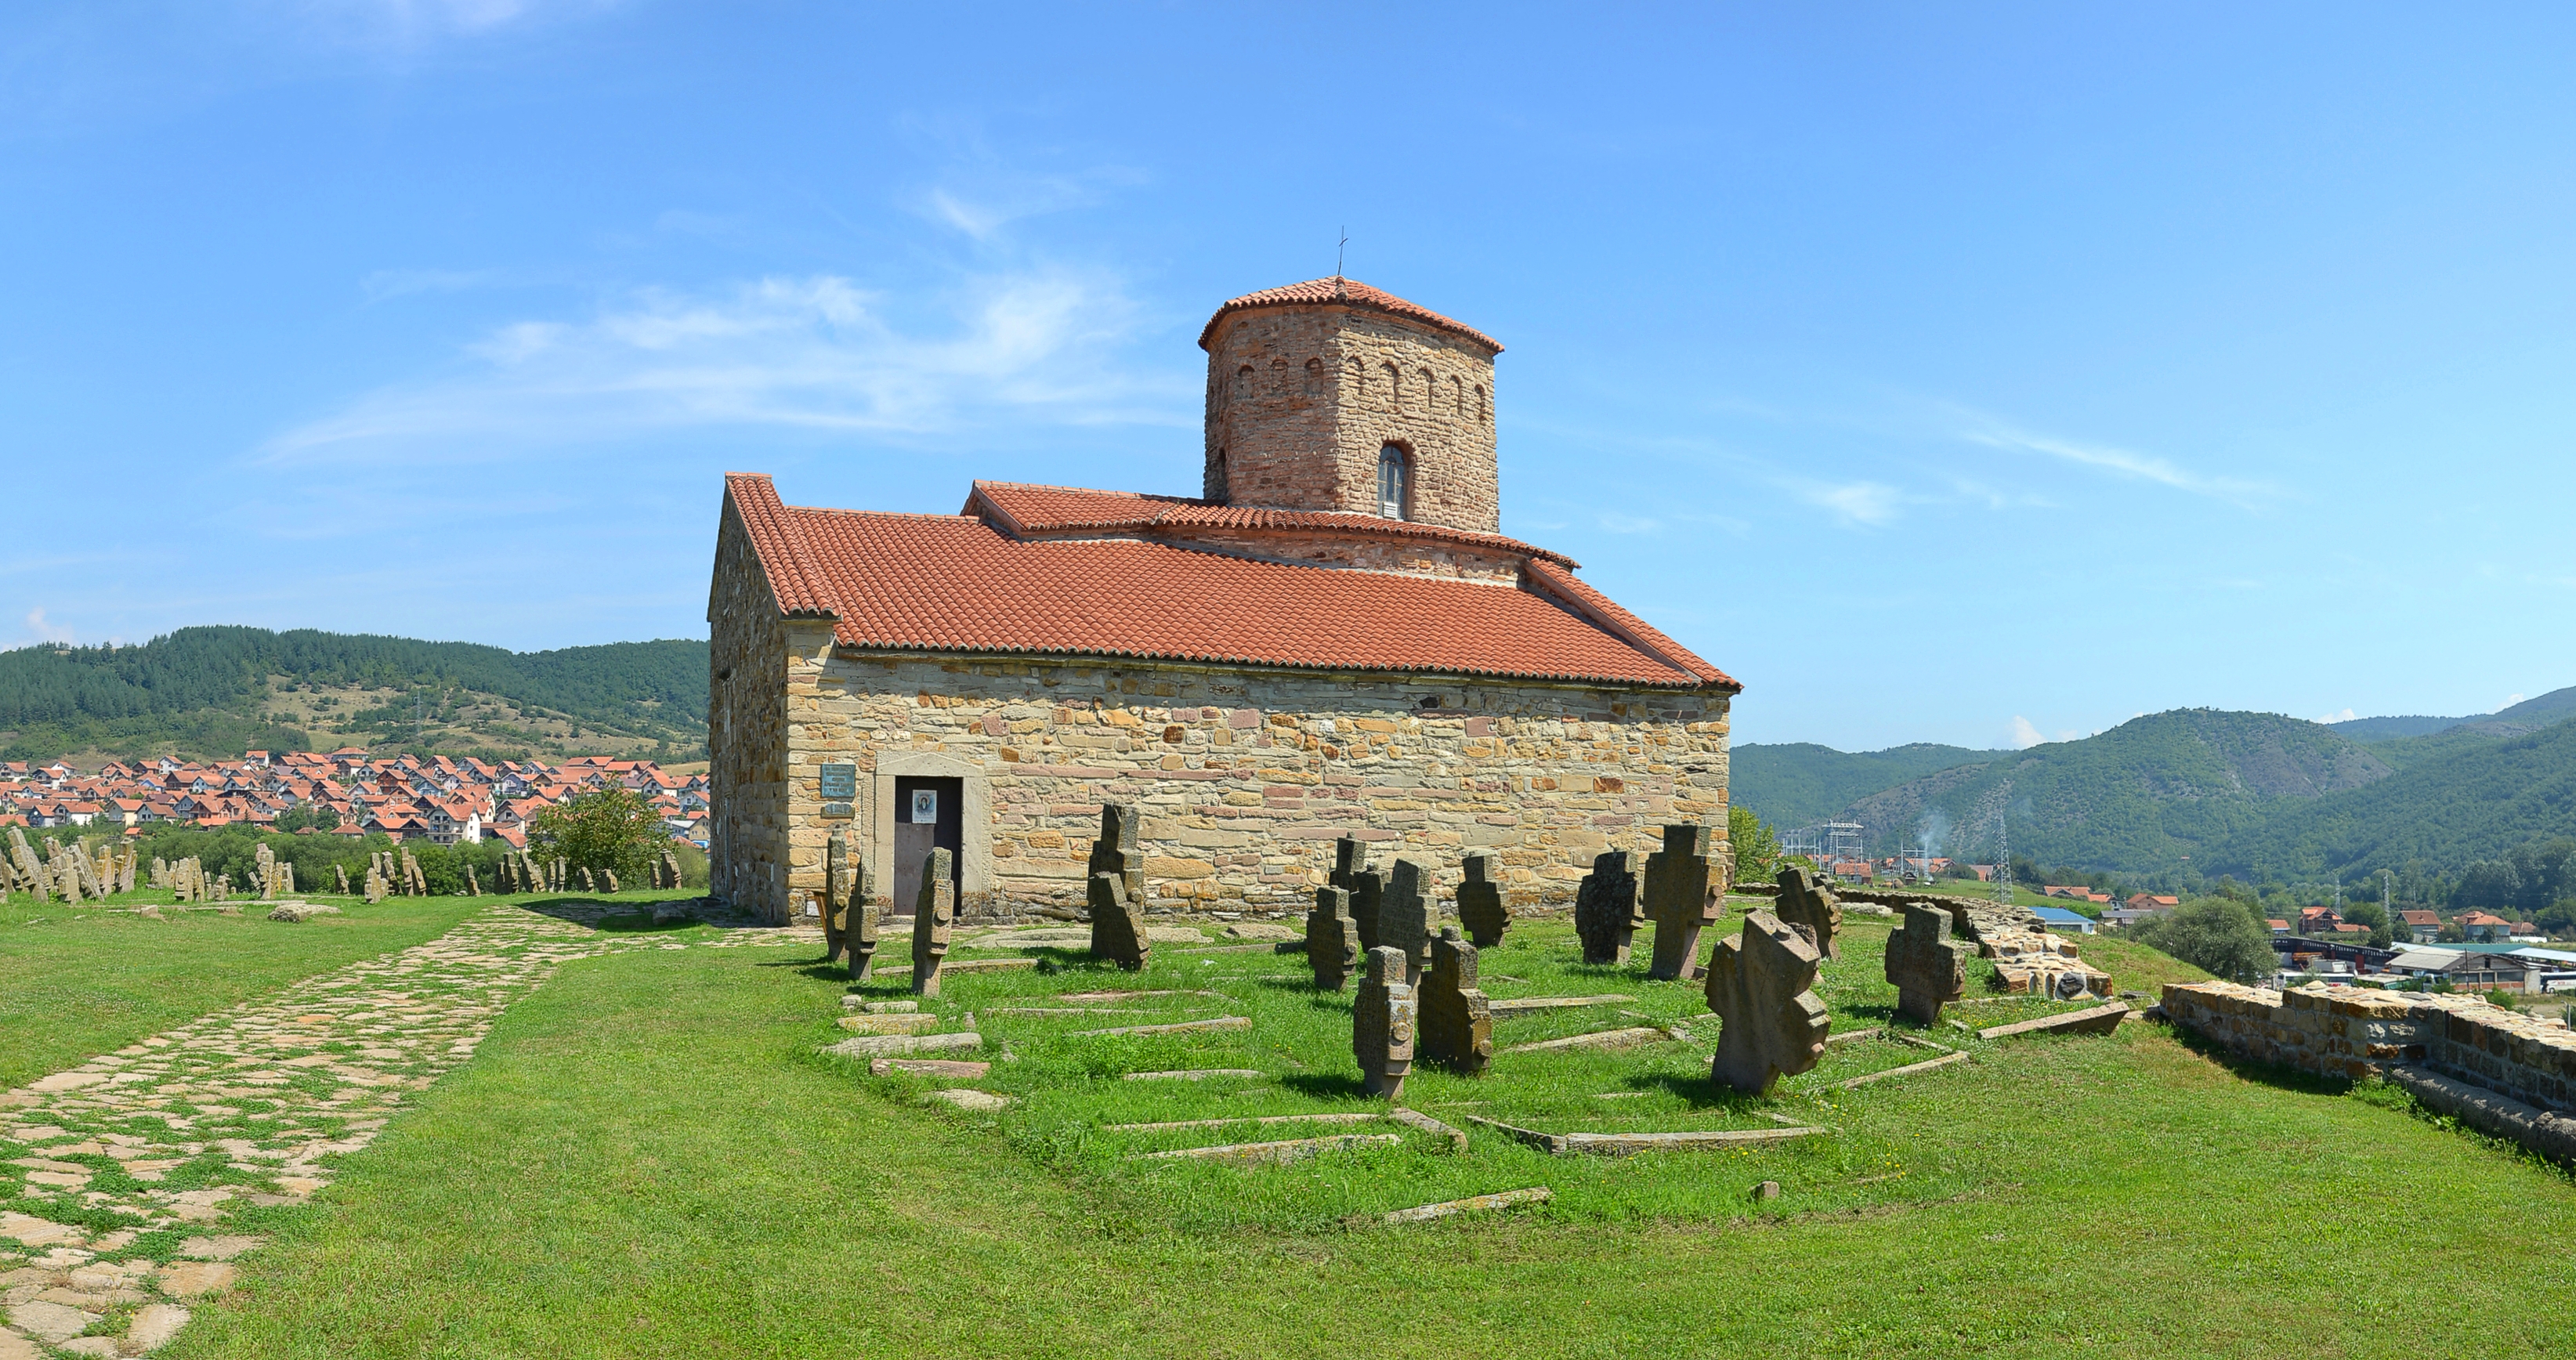 Petrova crkva (by Pudelek)